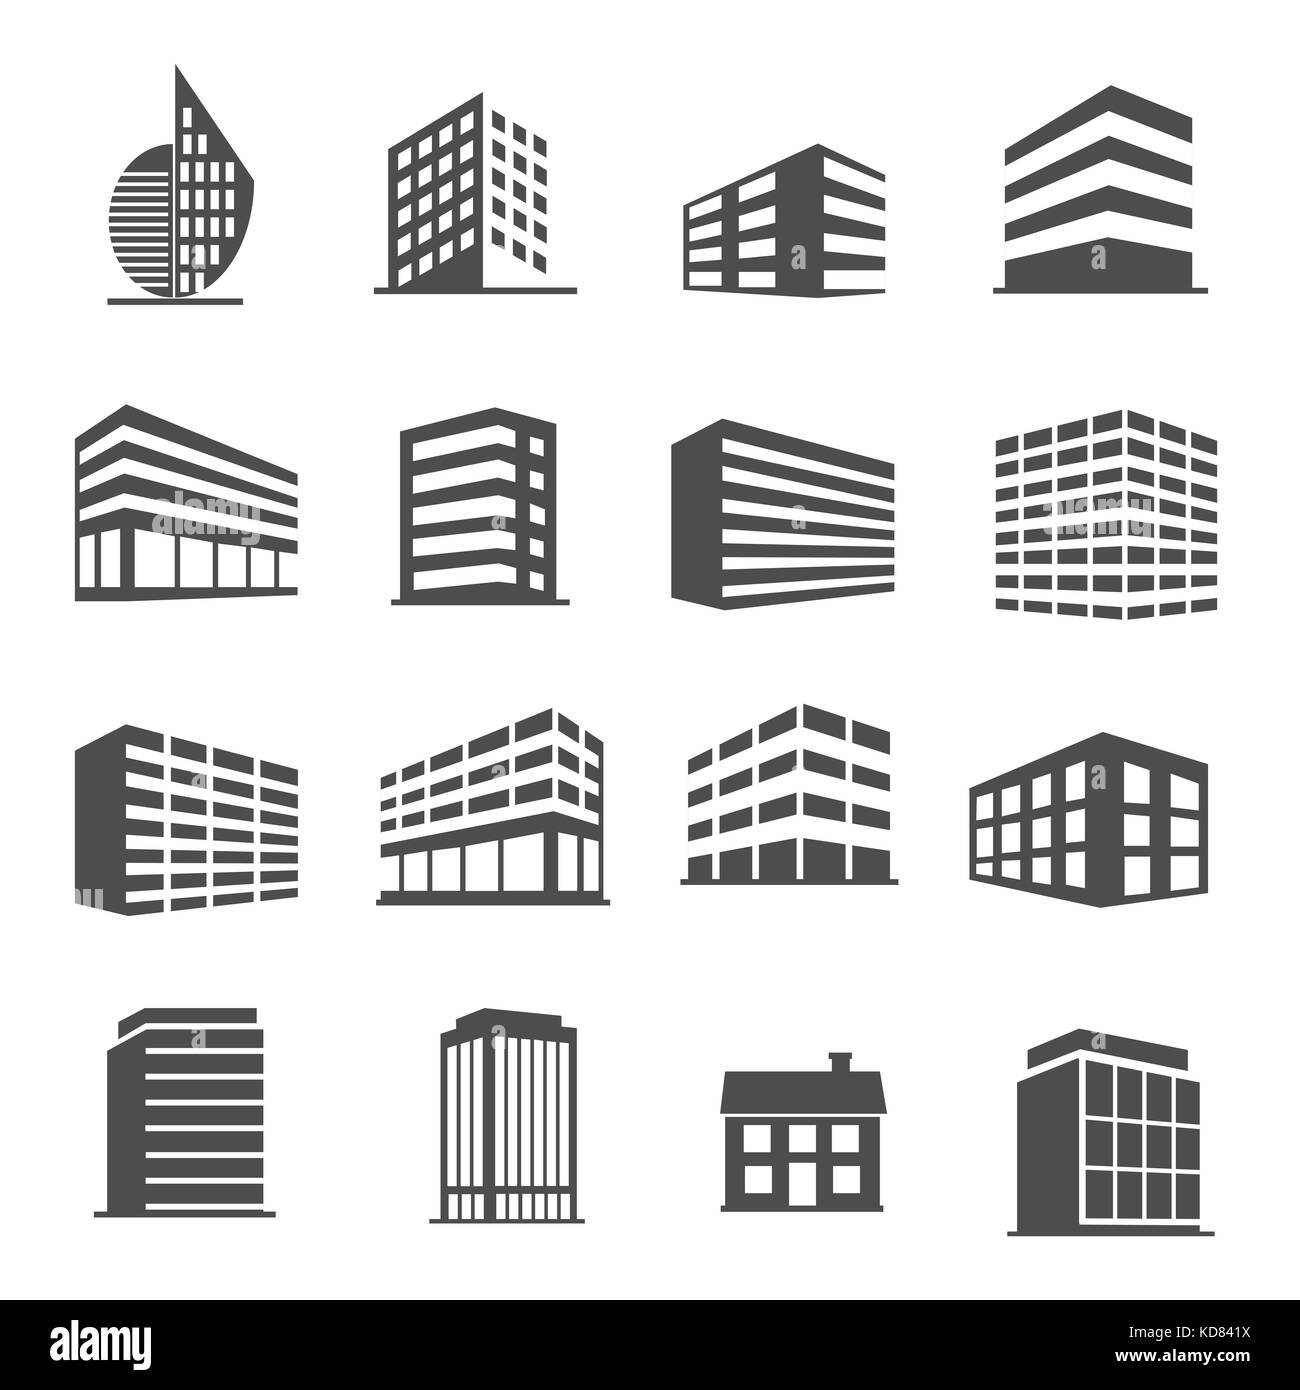 Bâtiment et estate icons set vector Banque D'Images